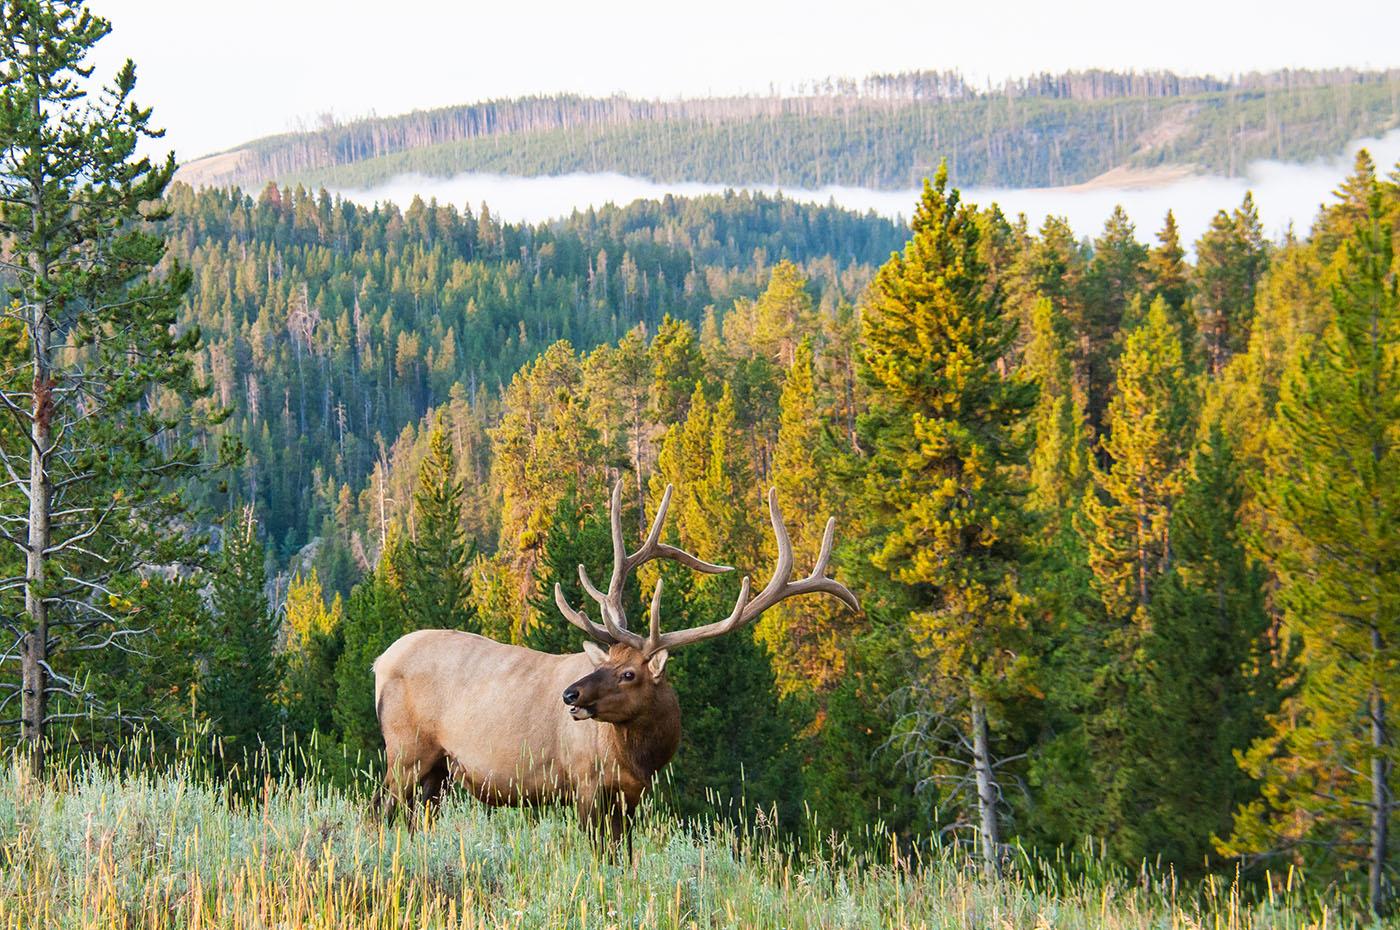 An elk. Photo: DJ40 / Shutterstock.com